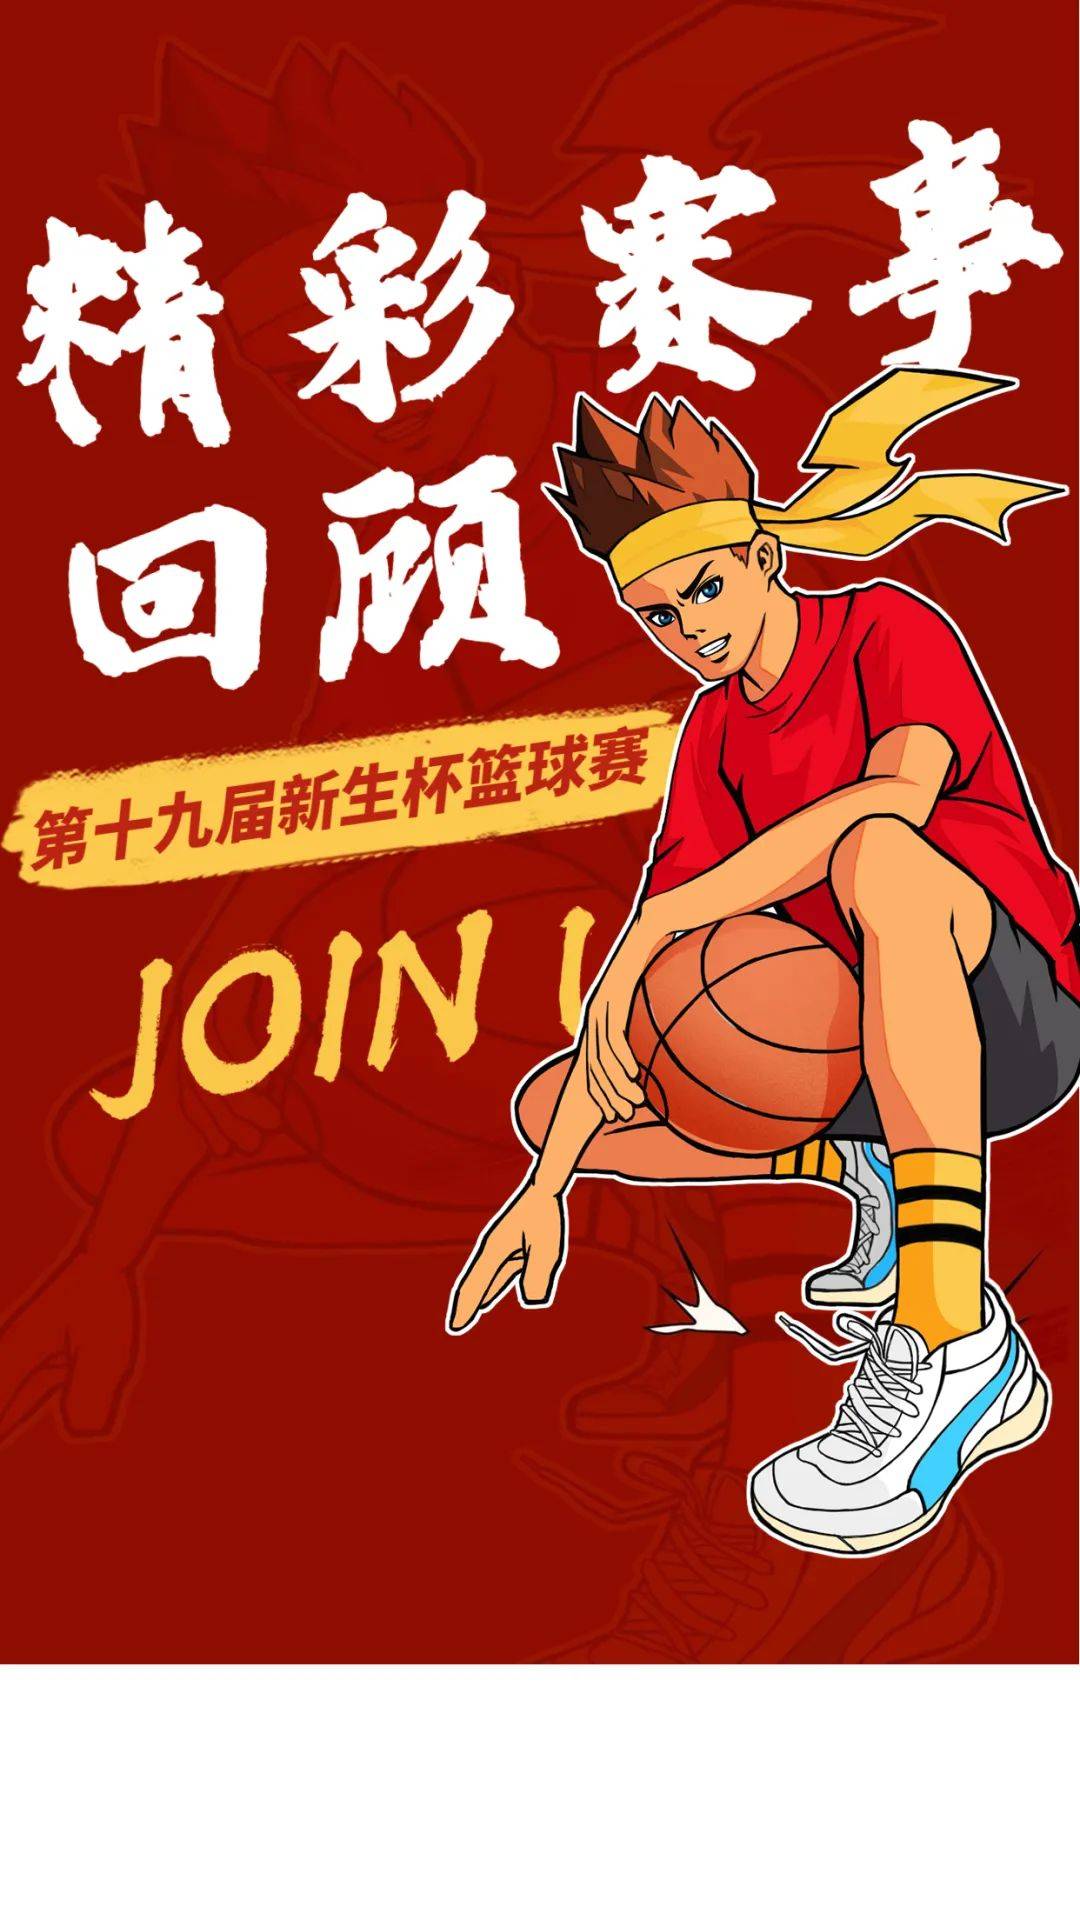 篮球新生杯宣传文案图片